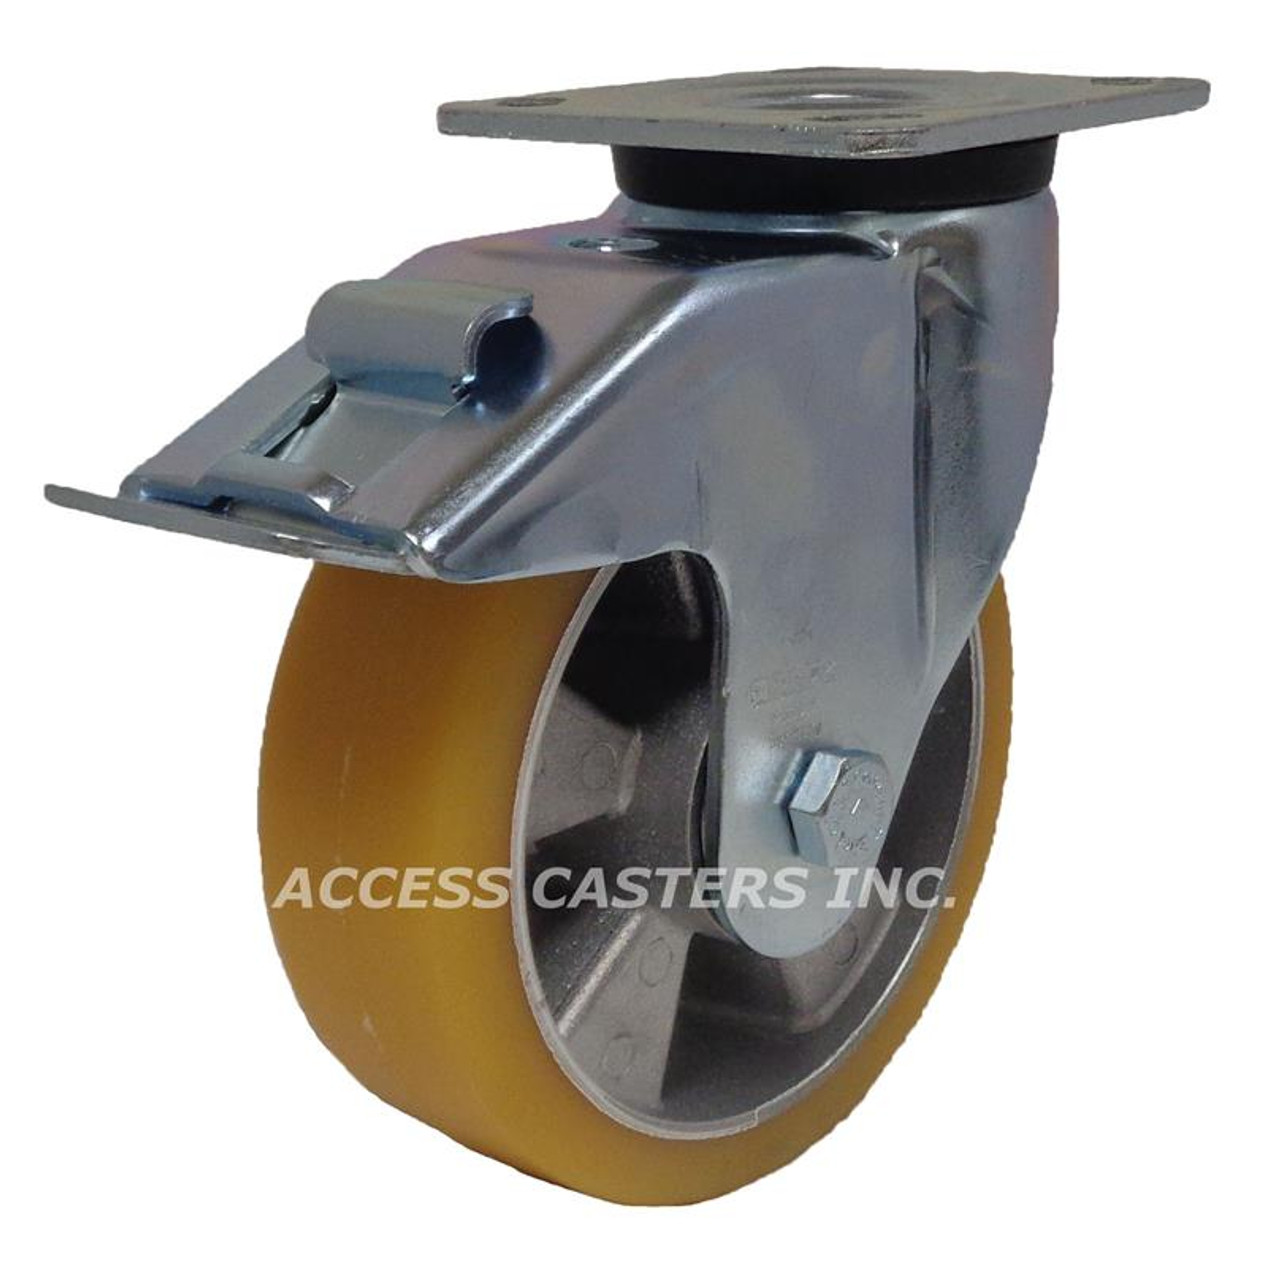 LEH-ALTH 200K-14-FI Blickle 8" Swivel Plate Caster ALTH Wheel Brake Ball Be